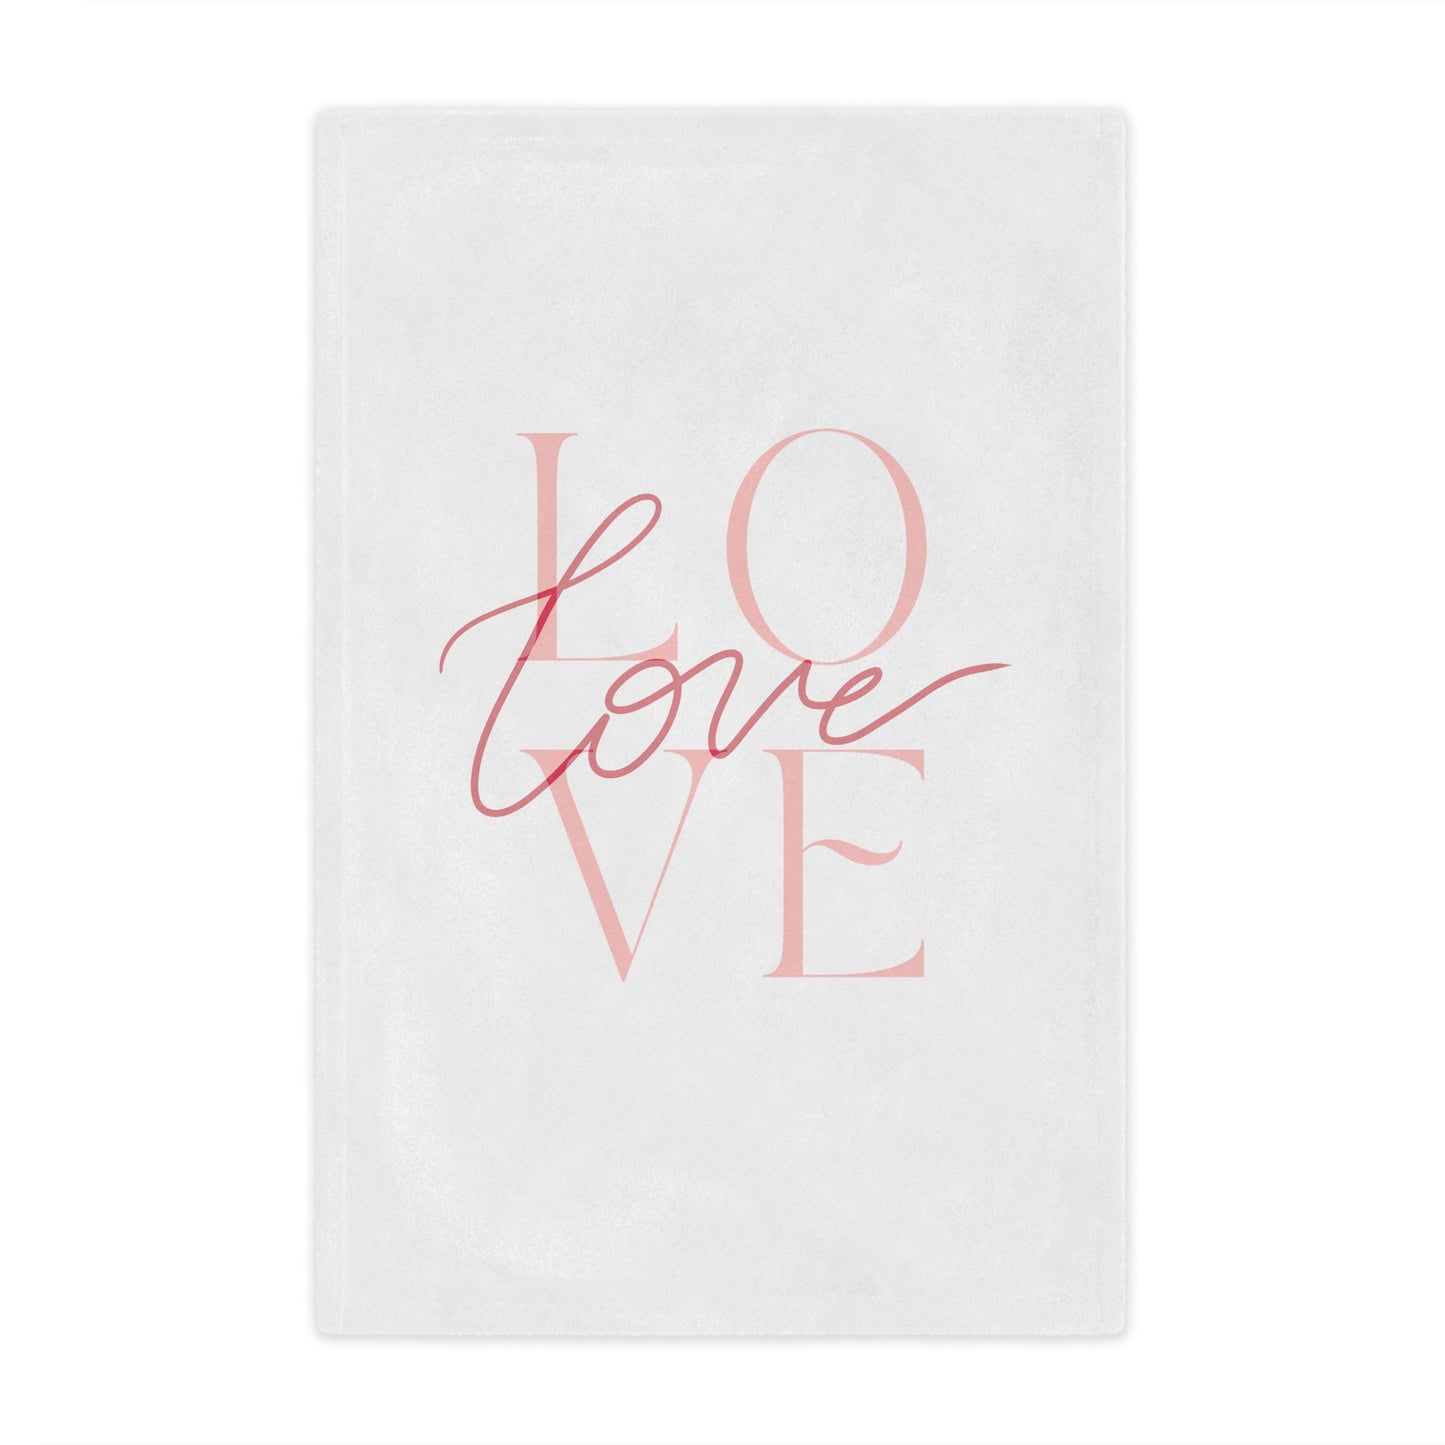 Love Printed Velveteen Minky Blanket for Her, Valentine Gift for Couple